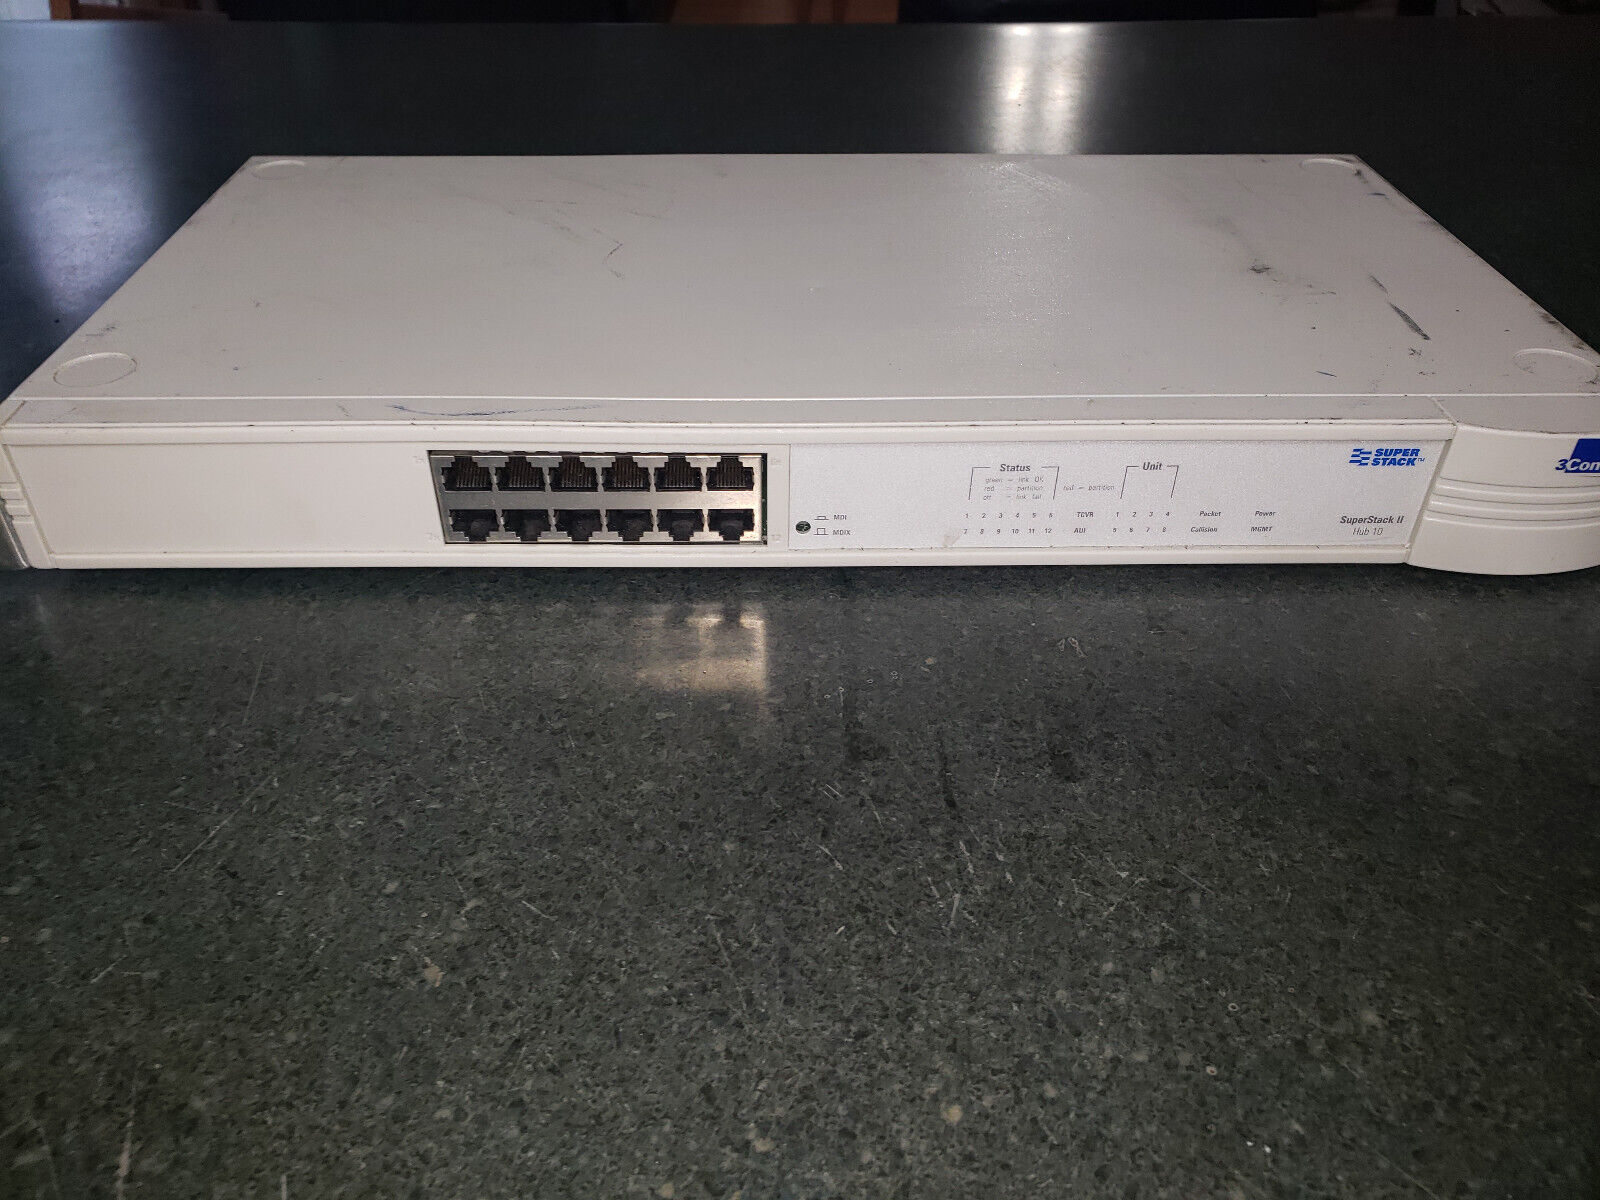 3Com SuperStack II Hub 10 8 Port Ethernet Switch